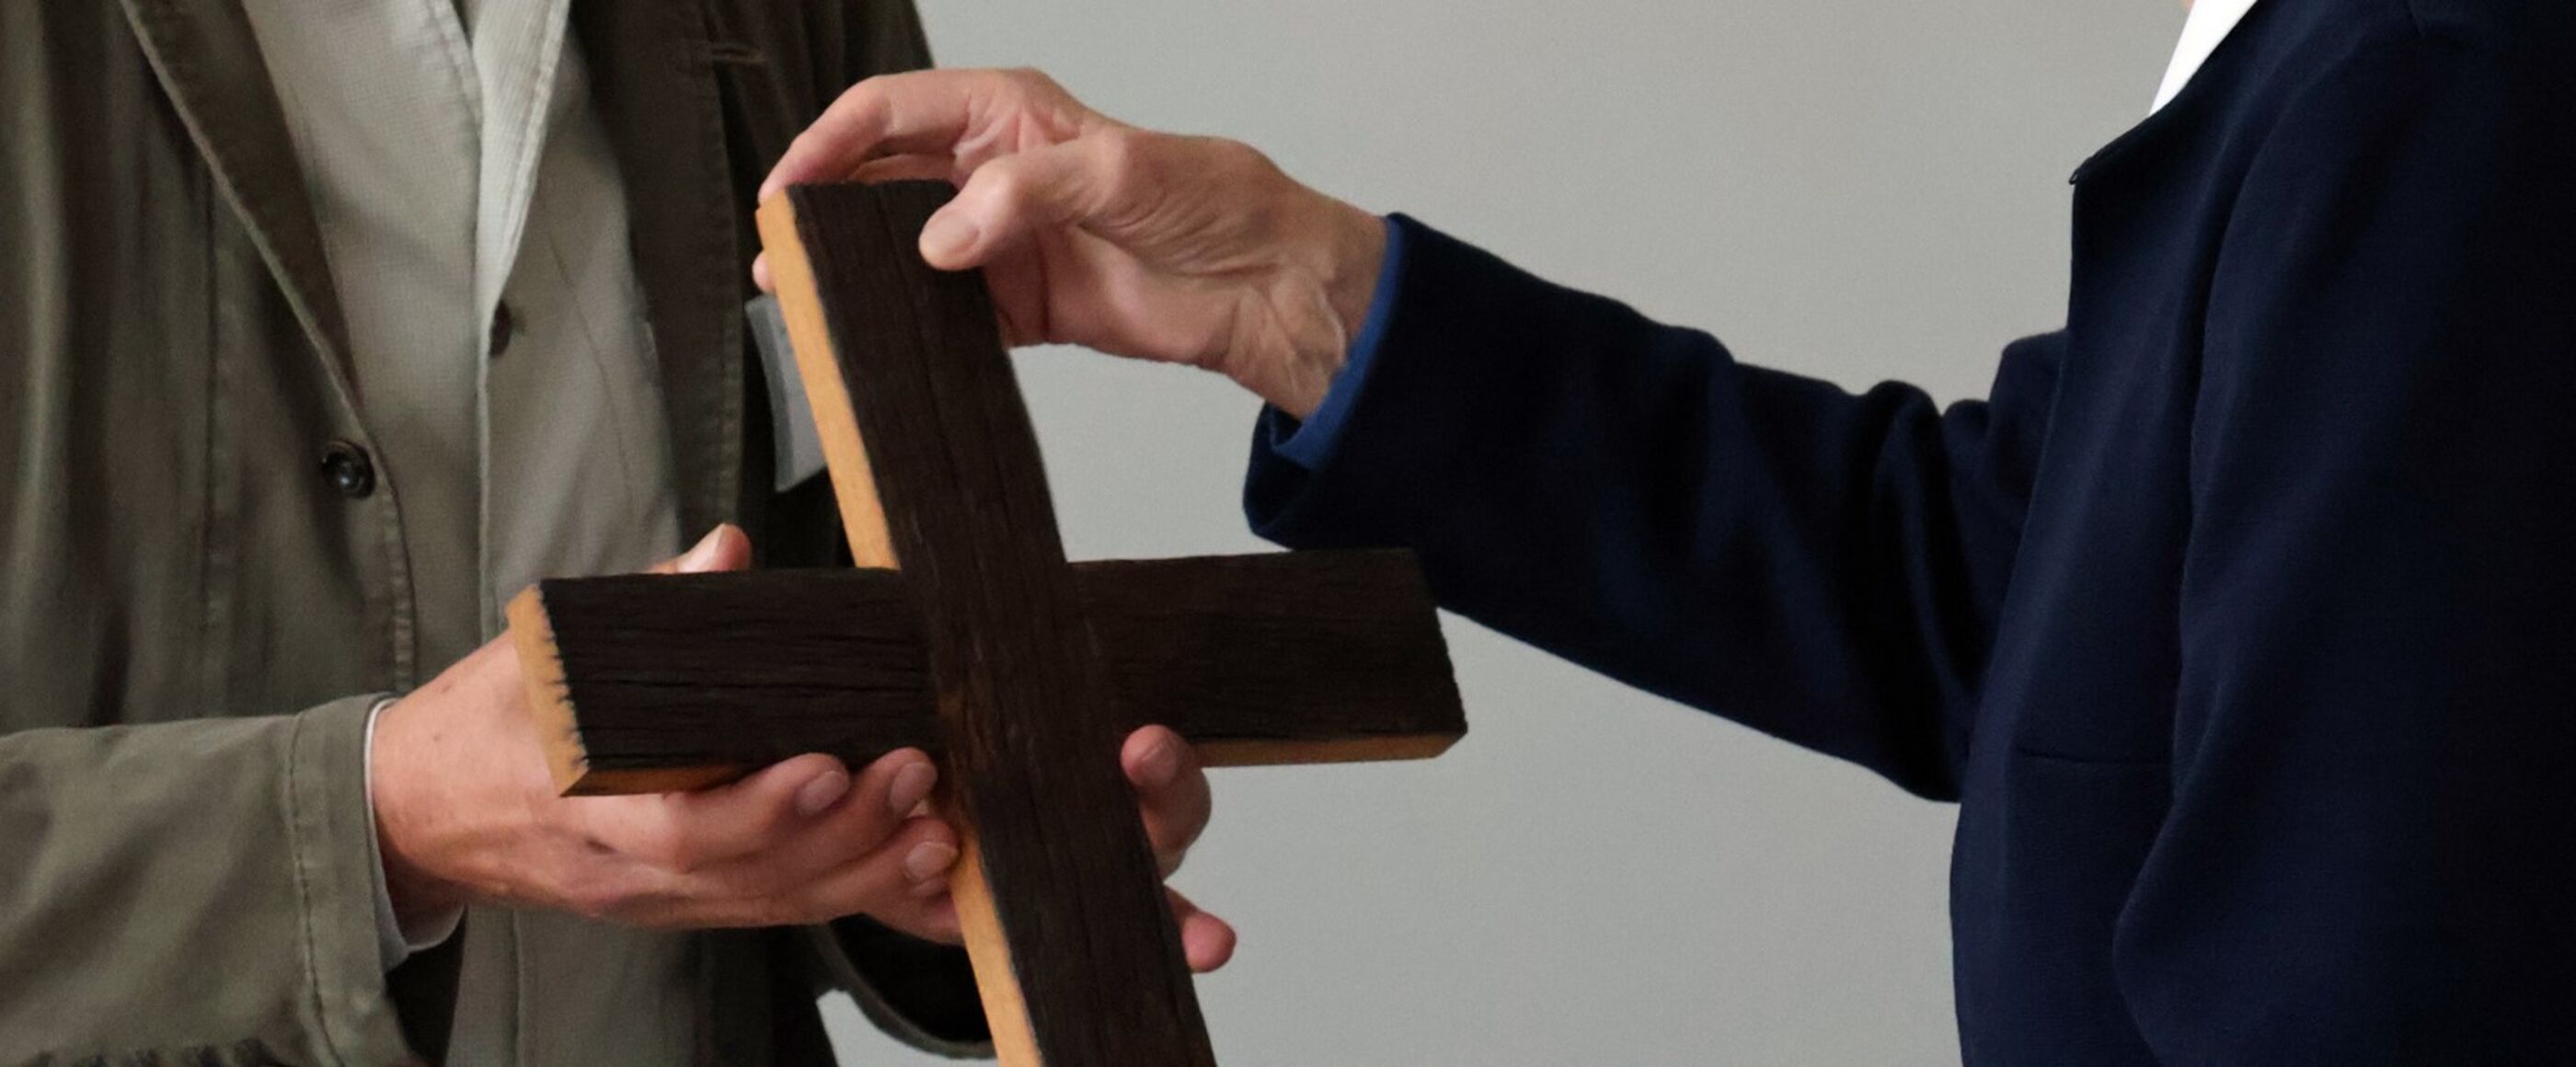 Eine Person übergibt einer anderen ein Holzkreuz. Sichtbar sind nur Hände und Schultern.